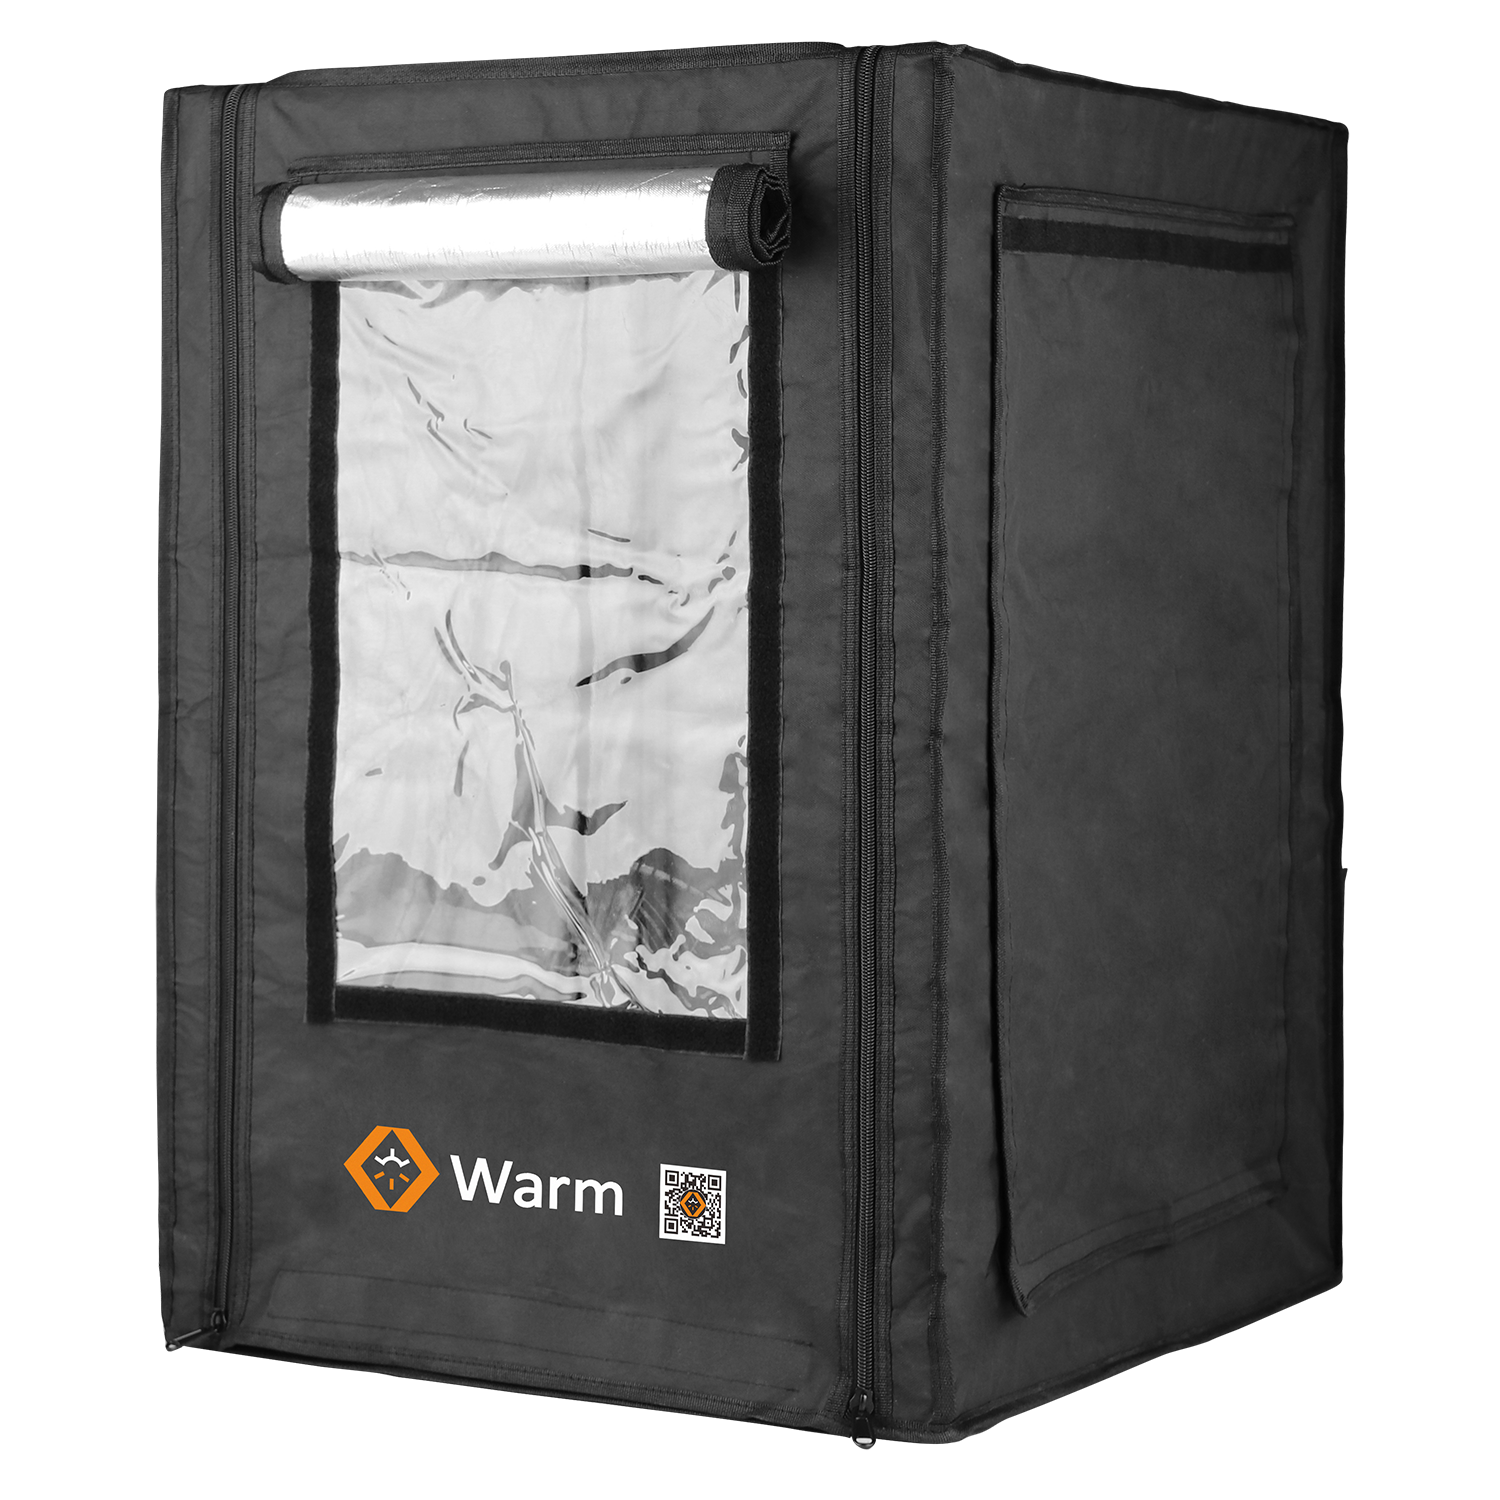 Περίβλημα Max 3D Printer, Keep Warm, Flame Retradant, Full Coverage, and a Studio, Warm Max
